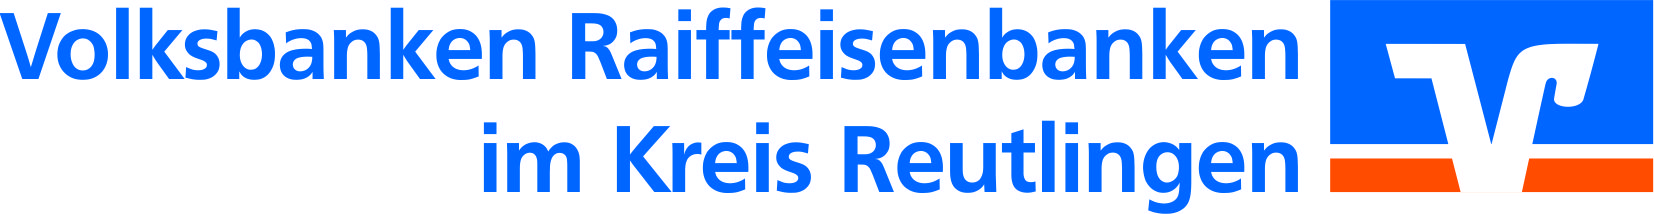 Bezirksvereinigung der Volks- und Raiffeisenbanken im Kreis Reutlingen